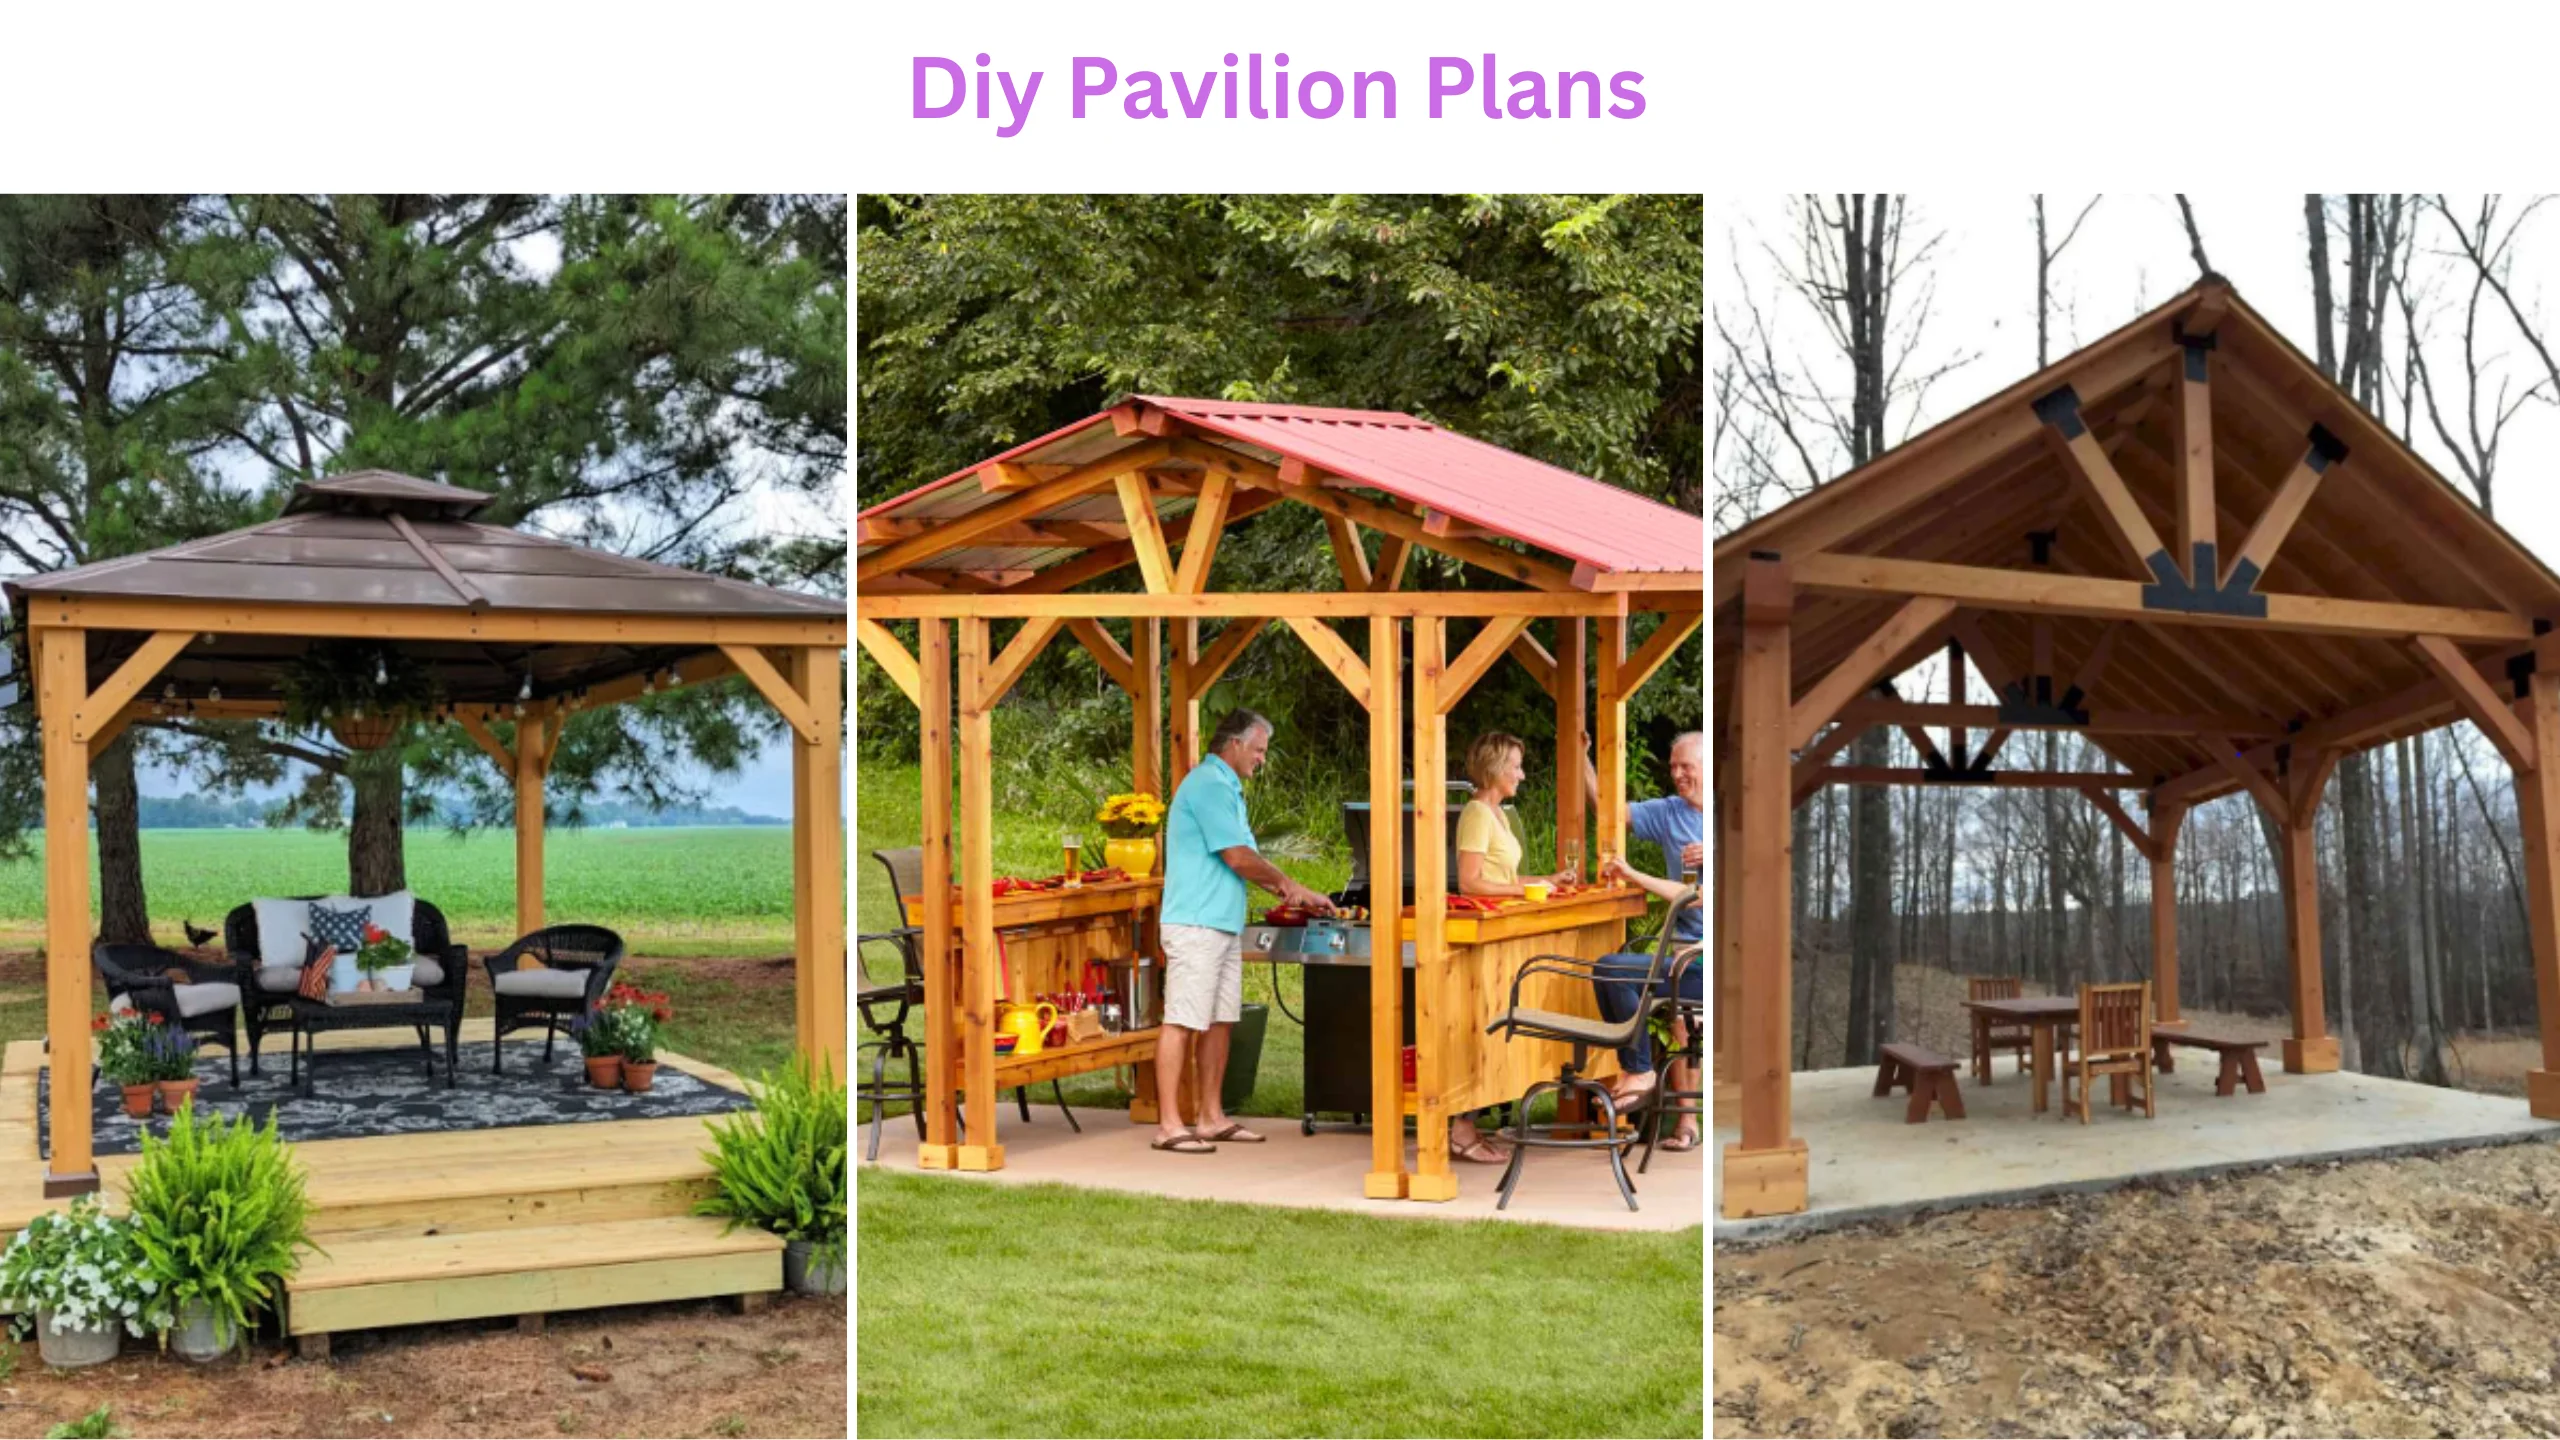 Diy pavilion plans